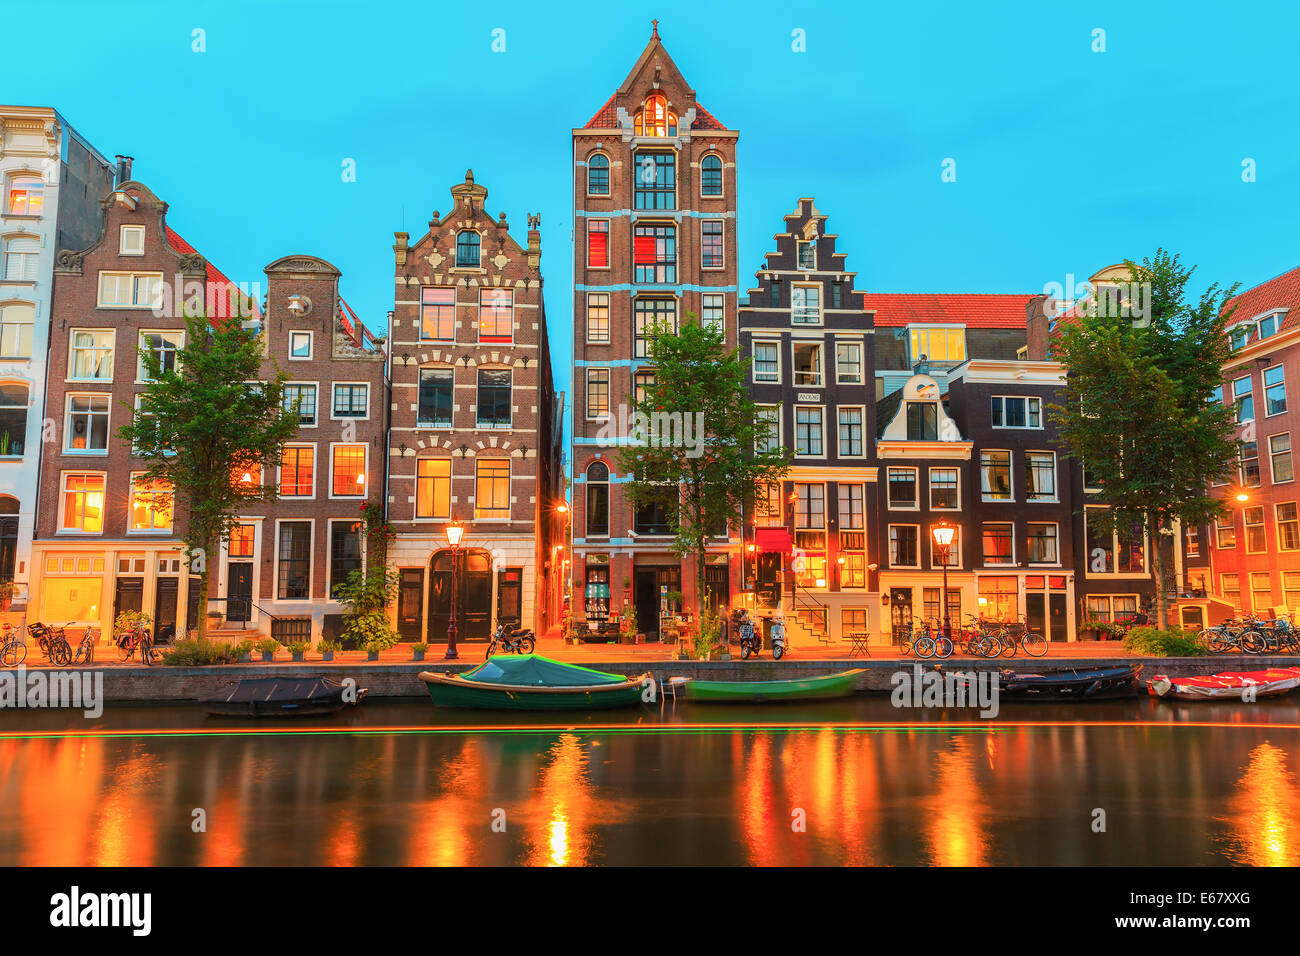 Notte Vista sulla città di Amsterdam canal Herengracht con tipiche case olandesi, imbarcazioni e biciclette, Holland, Paesi Bassi. Foto Stock